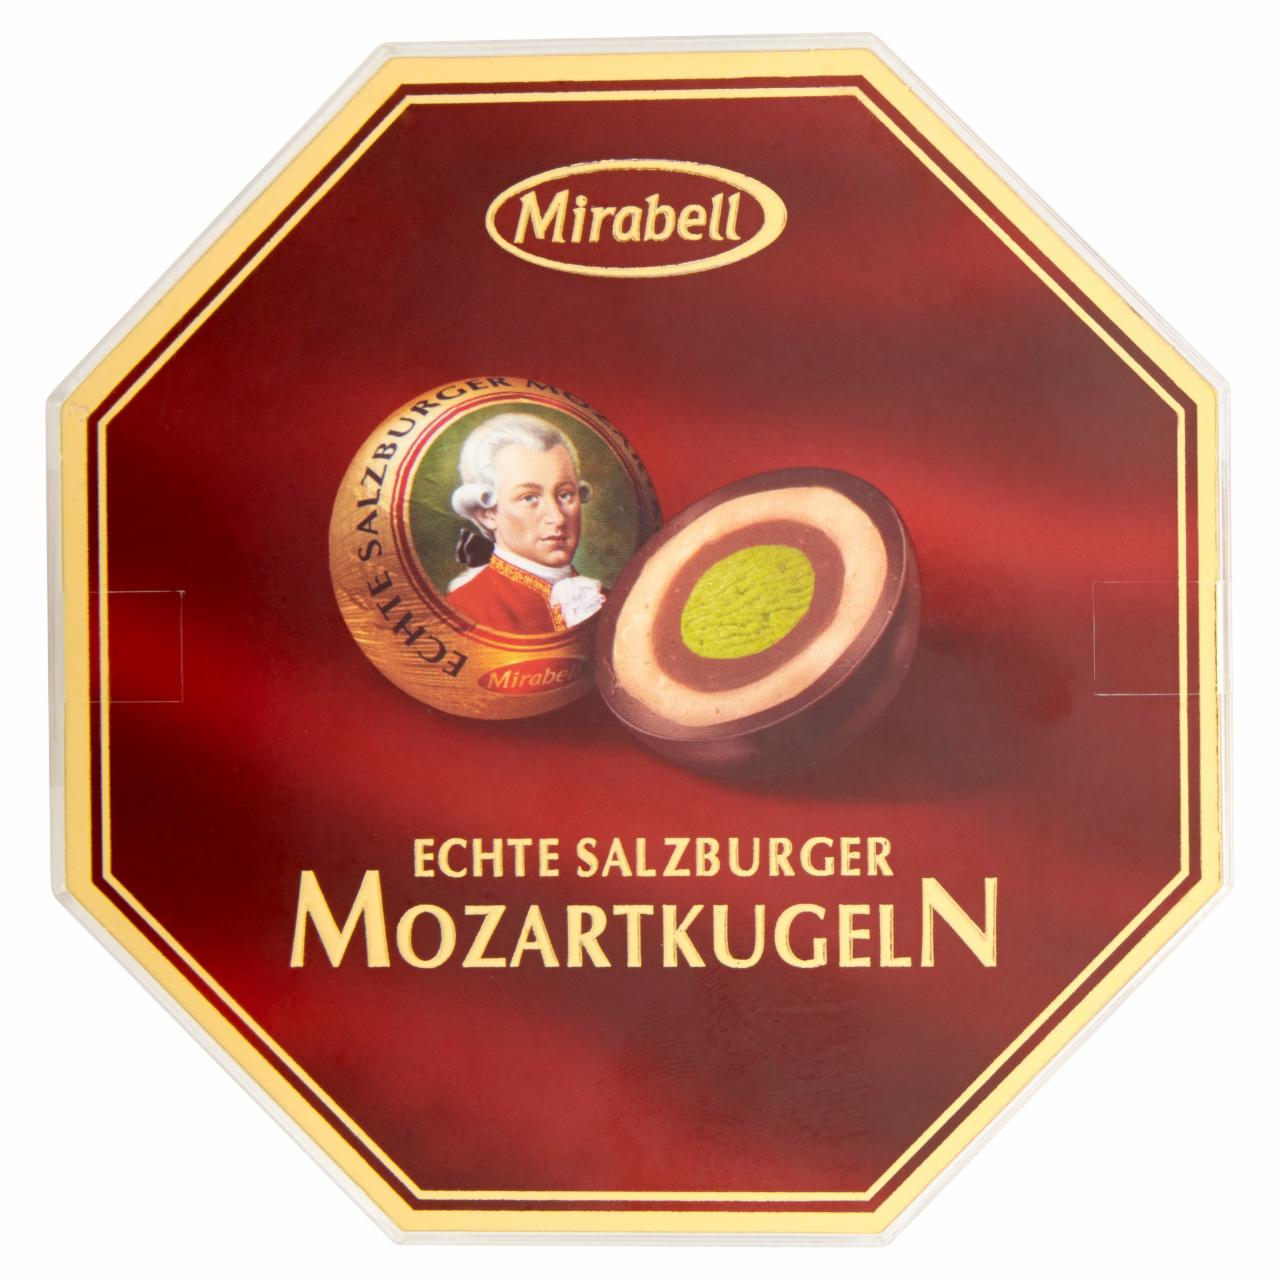 Képek - Mirabell Mozartkugeln étcsokoládé világos és sötét mogyoróskrém és marcipán töltelékkel 300 g